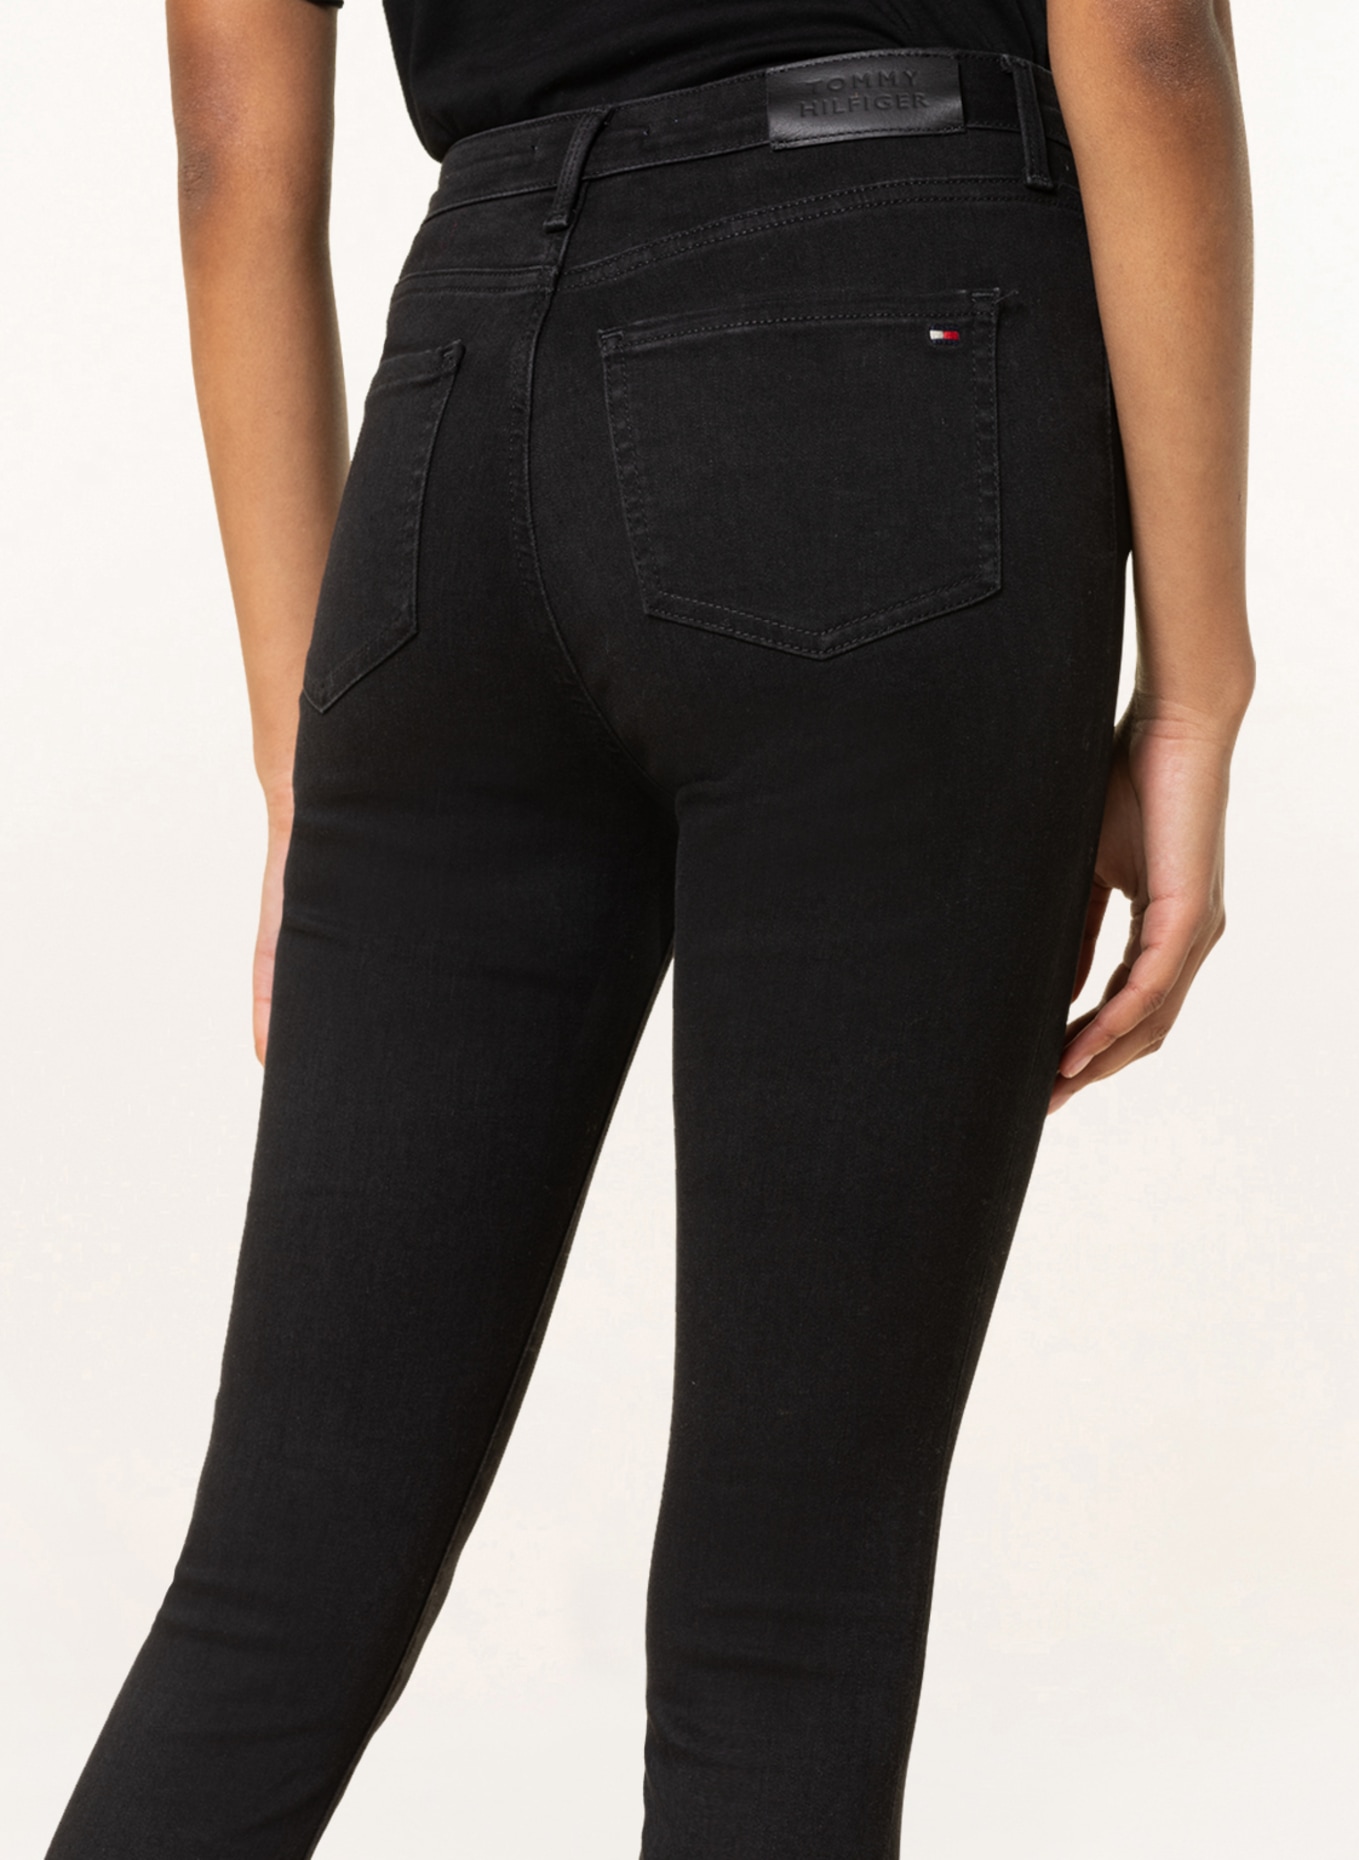 TOMMY HILFIGER Skinny jeans HARLEM , Color: 1BY Black (Image 5)